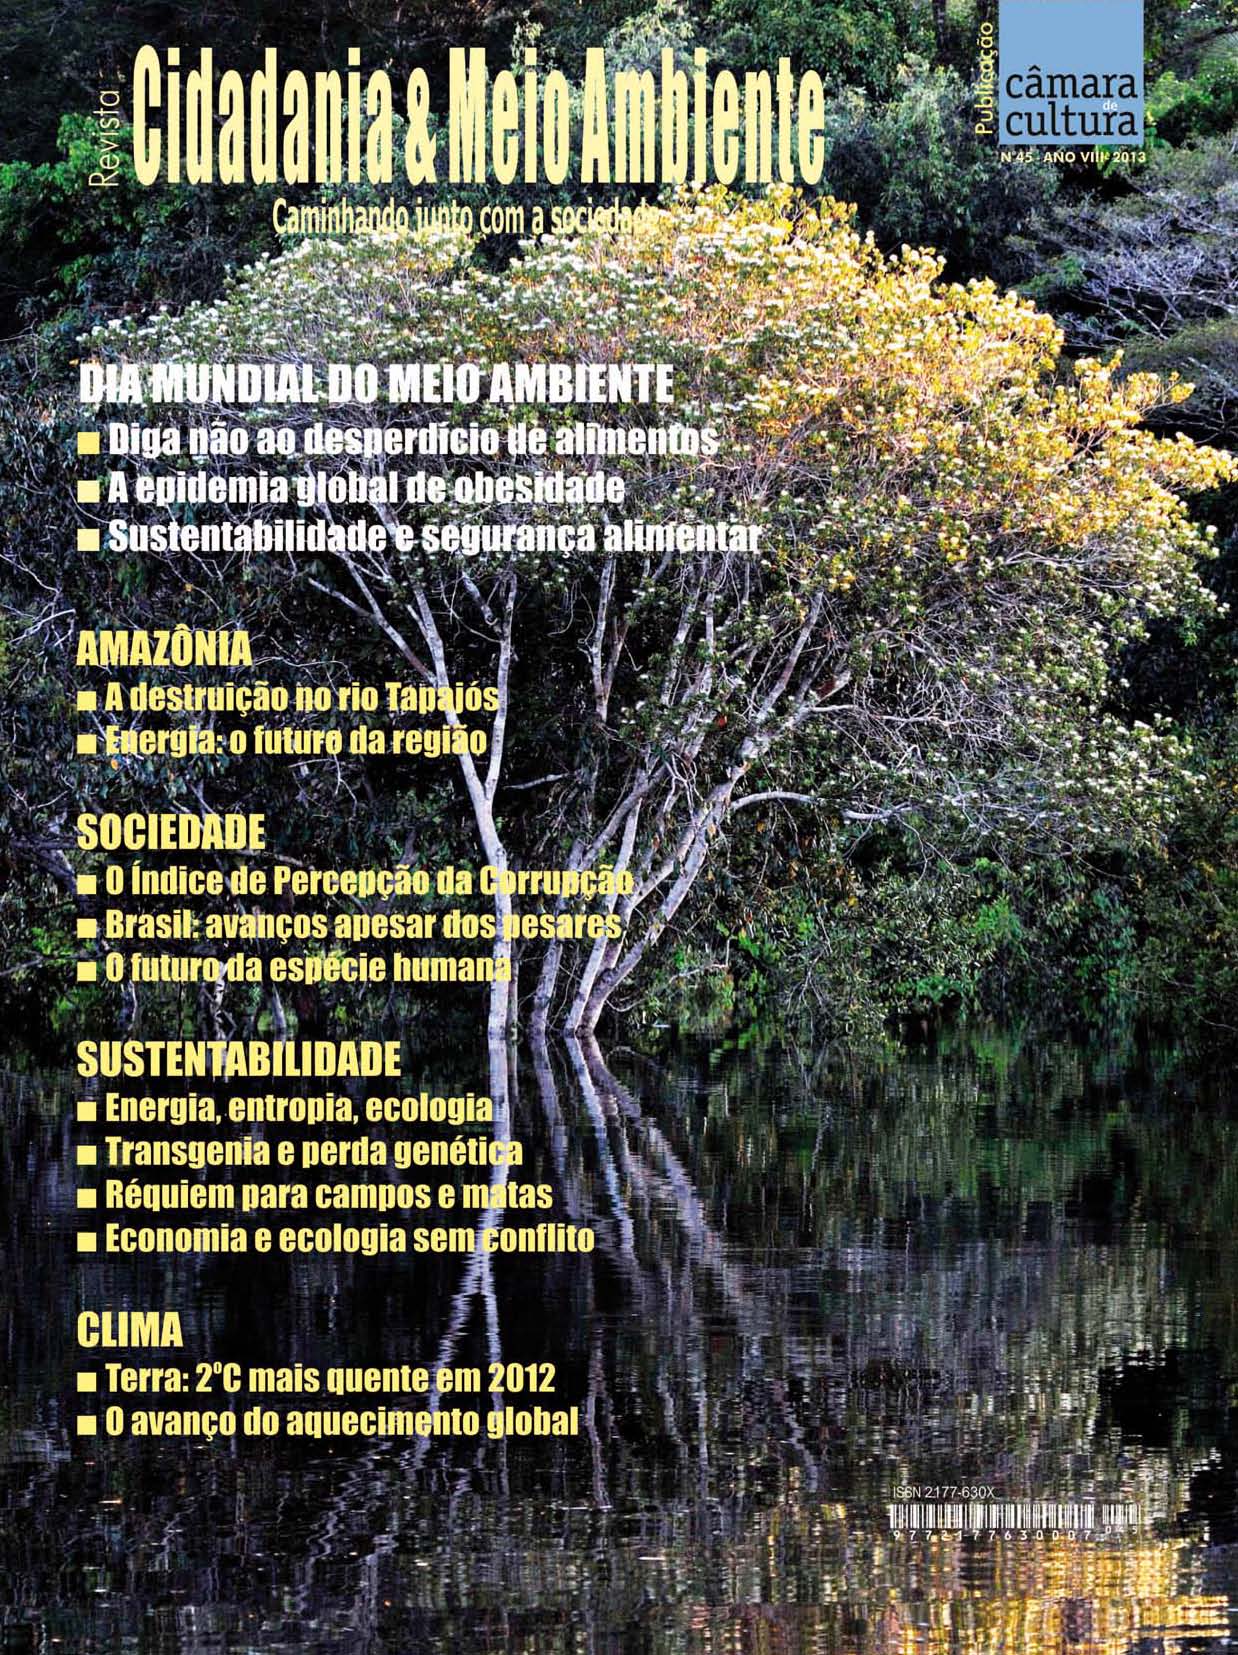 Capa da Edição n° 45 da revista Cidadania & Meio Ambiente